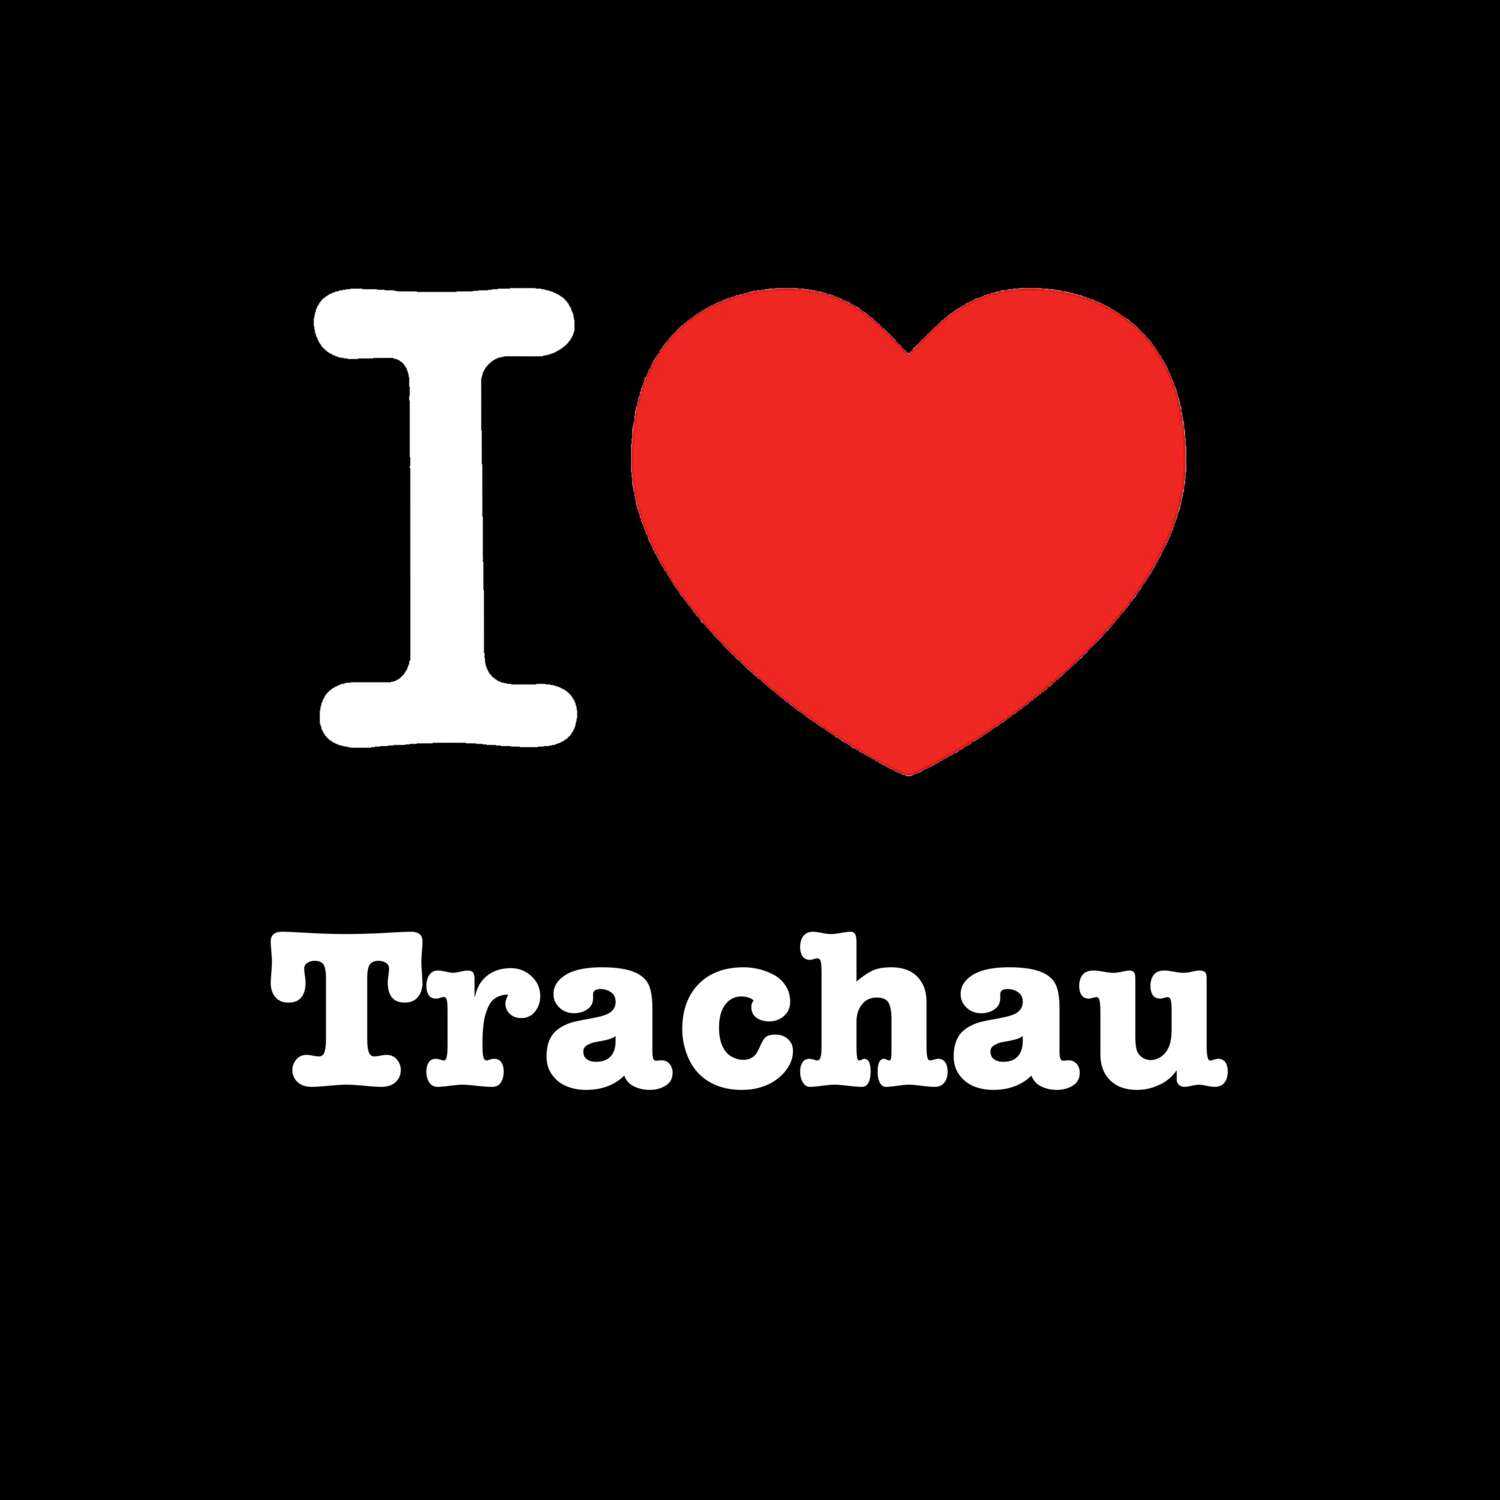 Trachau T-Shirt »I love«